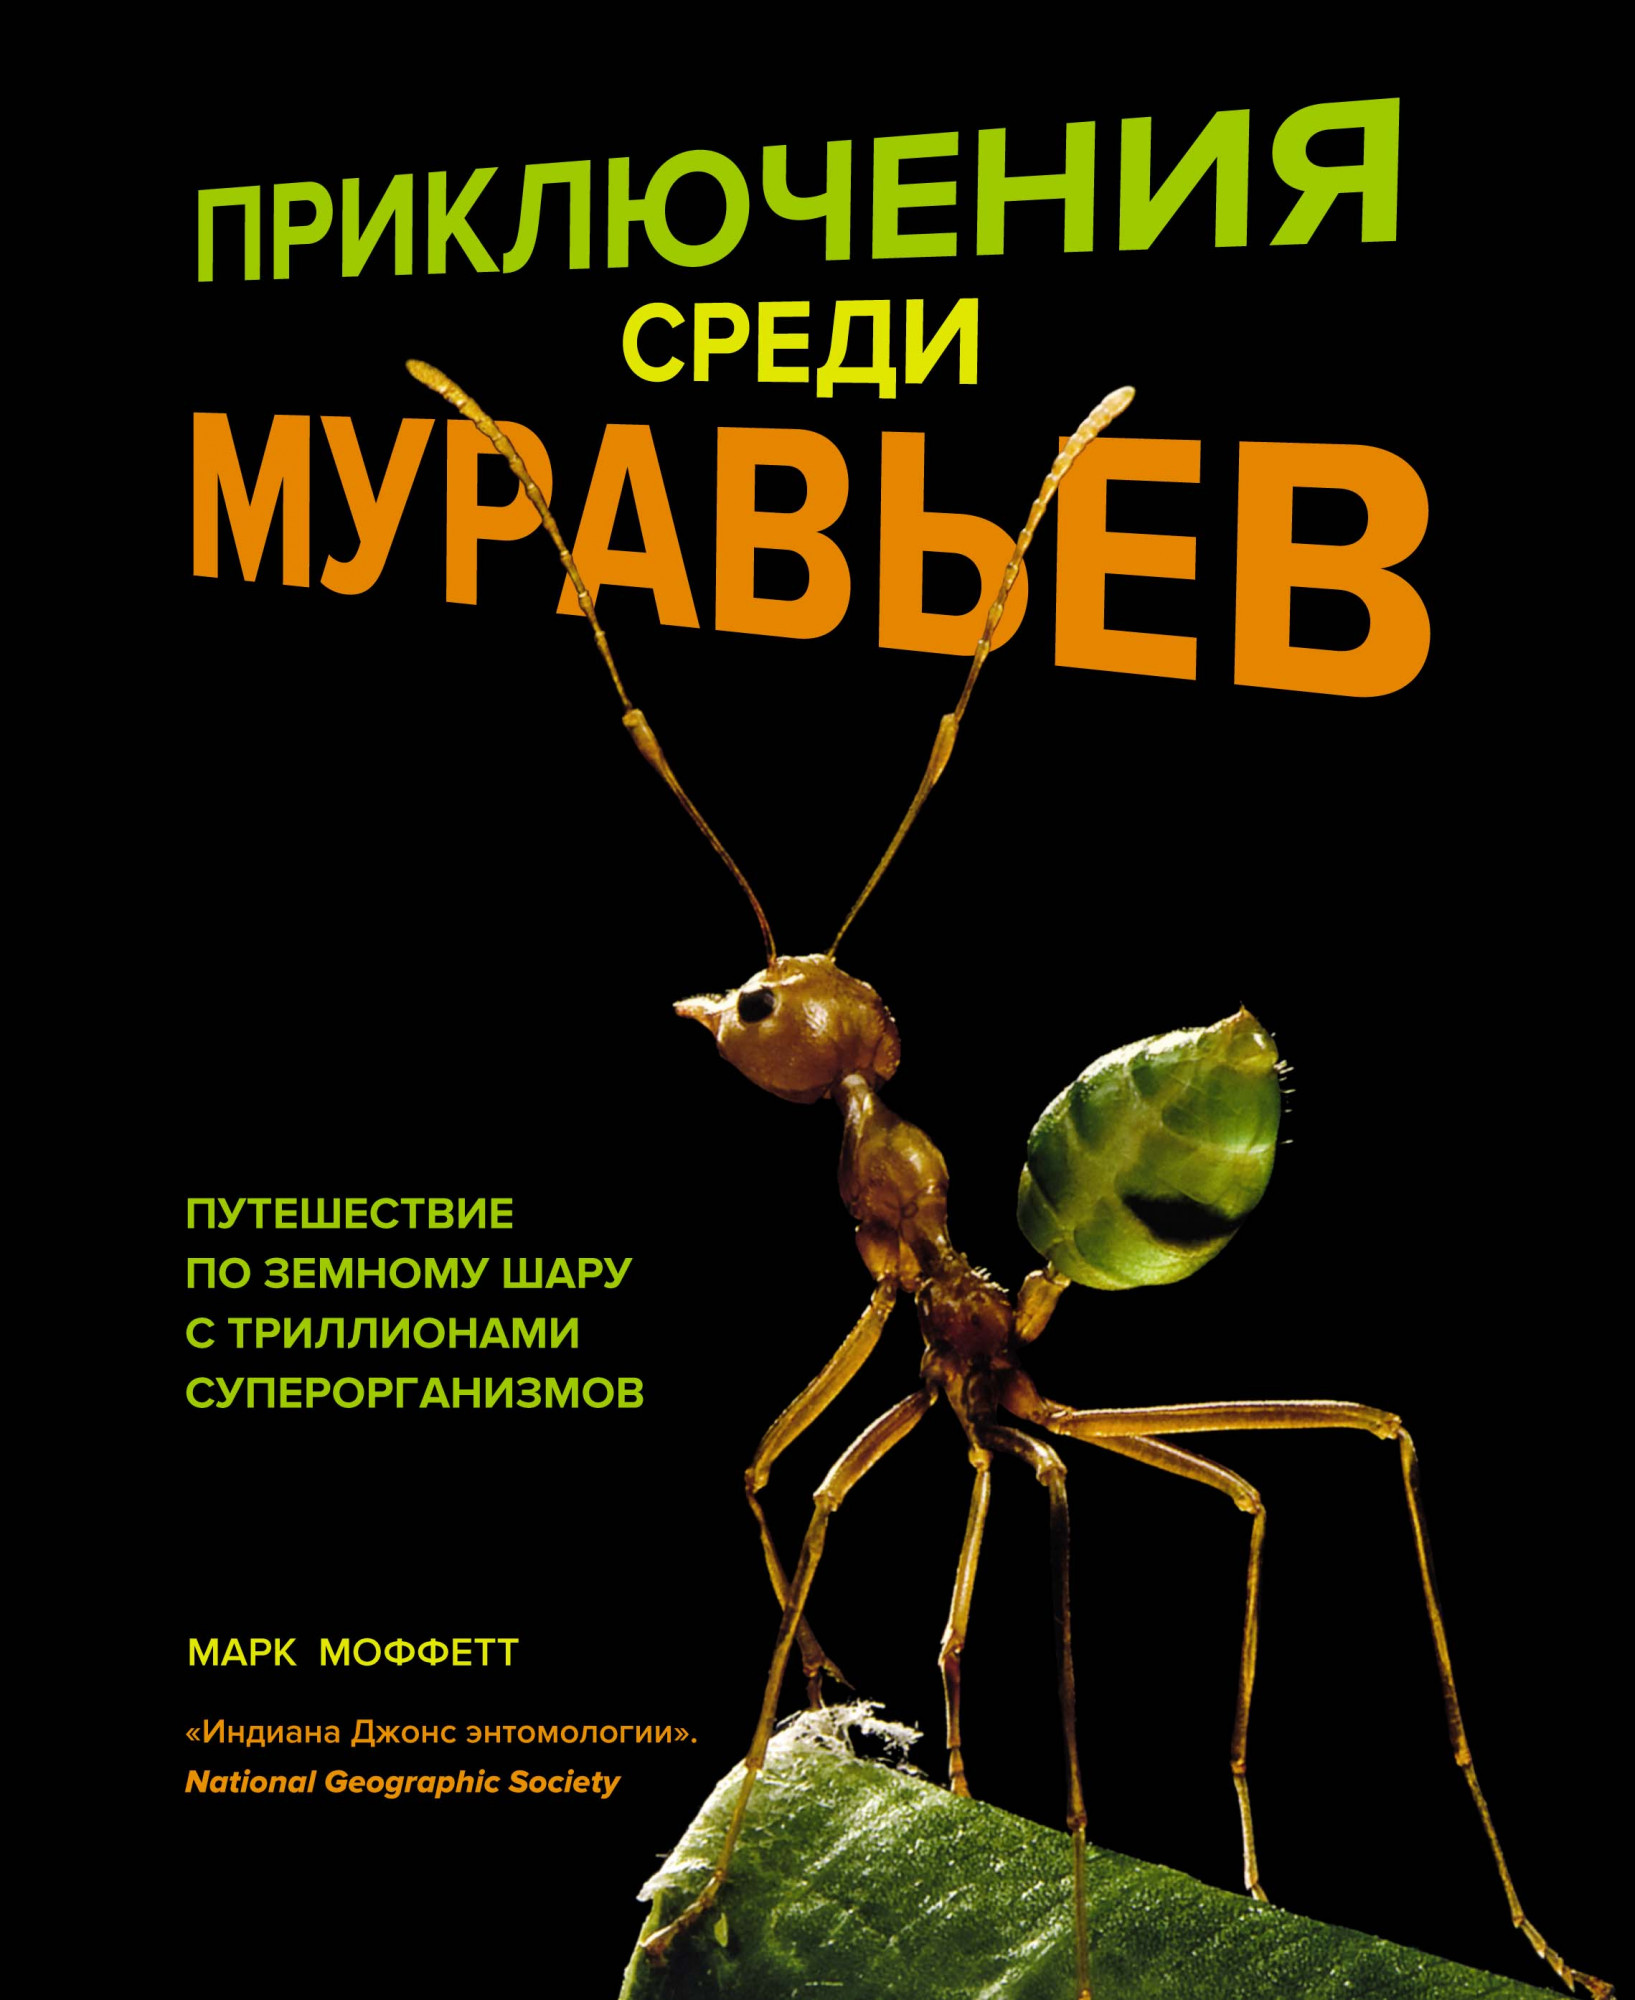 Приключения среди муравьев Путешествие по земному шару с триллионами суперорганизмов Моффетт